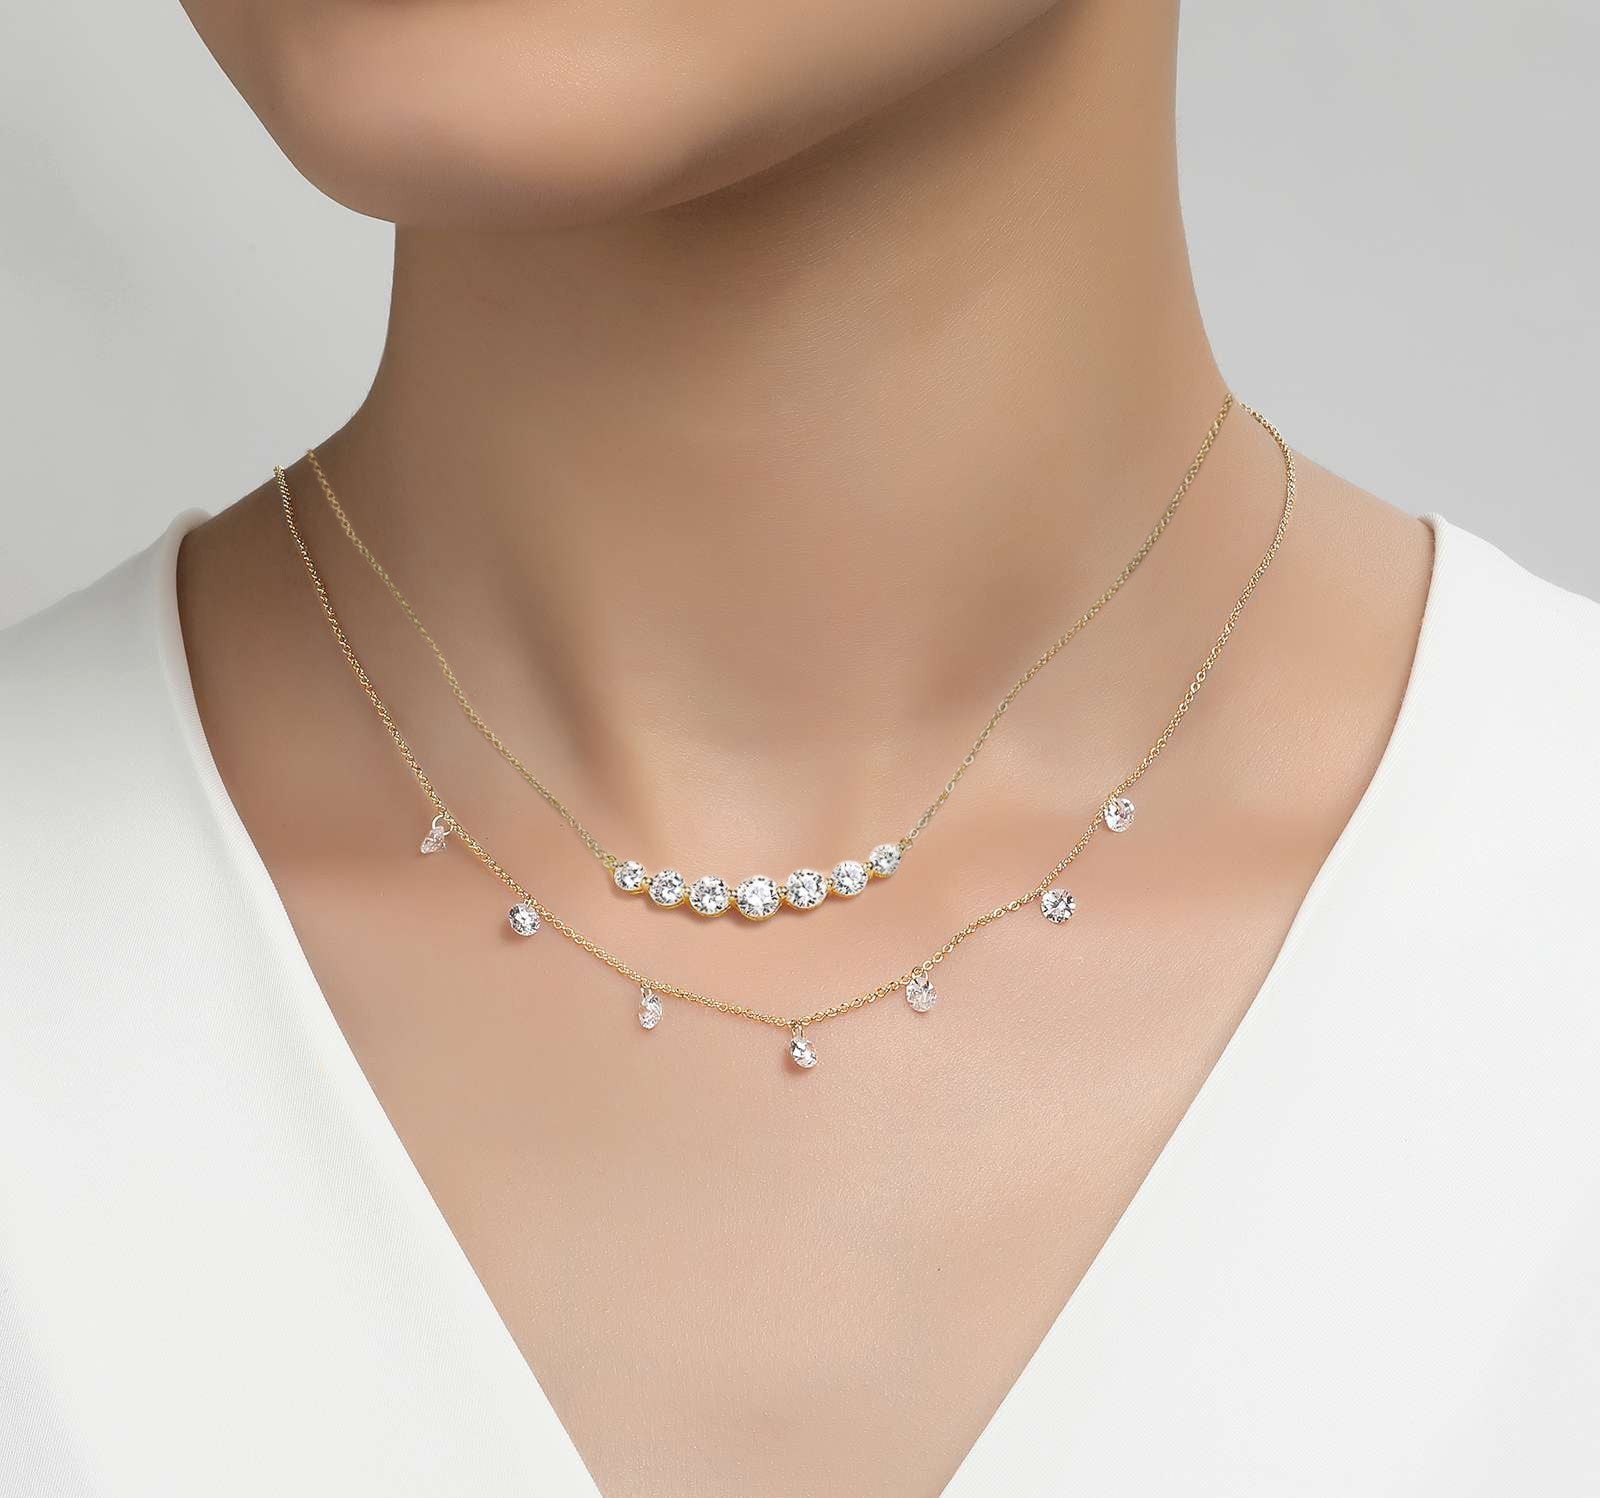 a woman wearing a beautiful diamond necklace